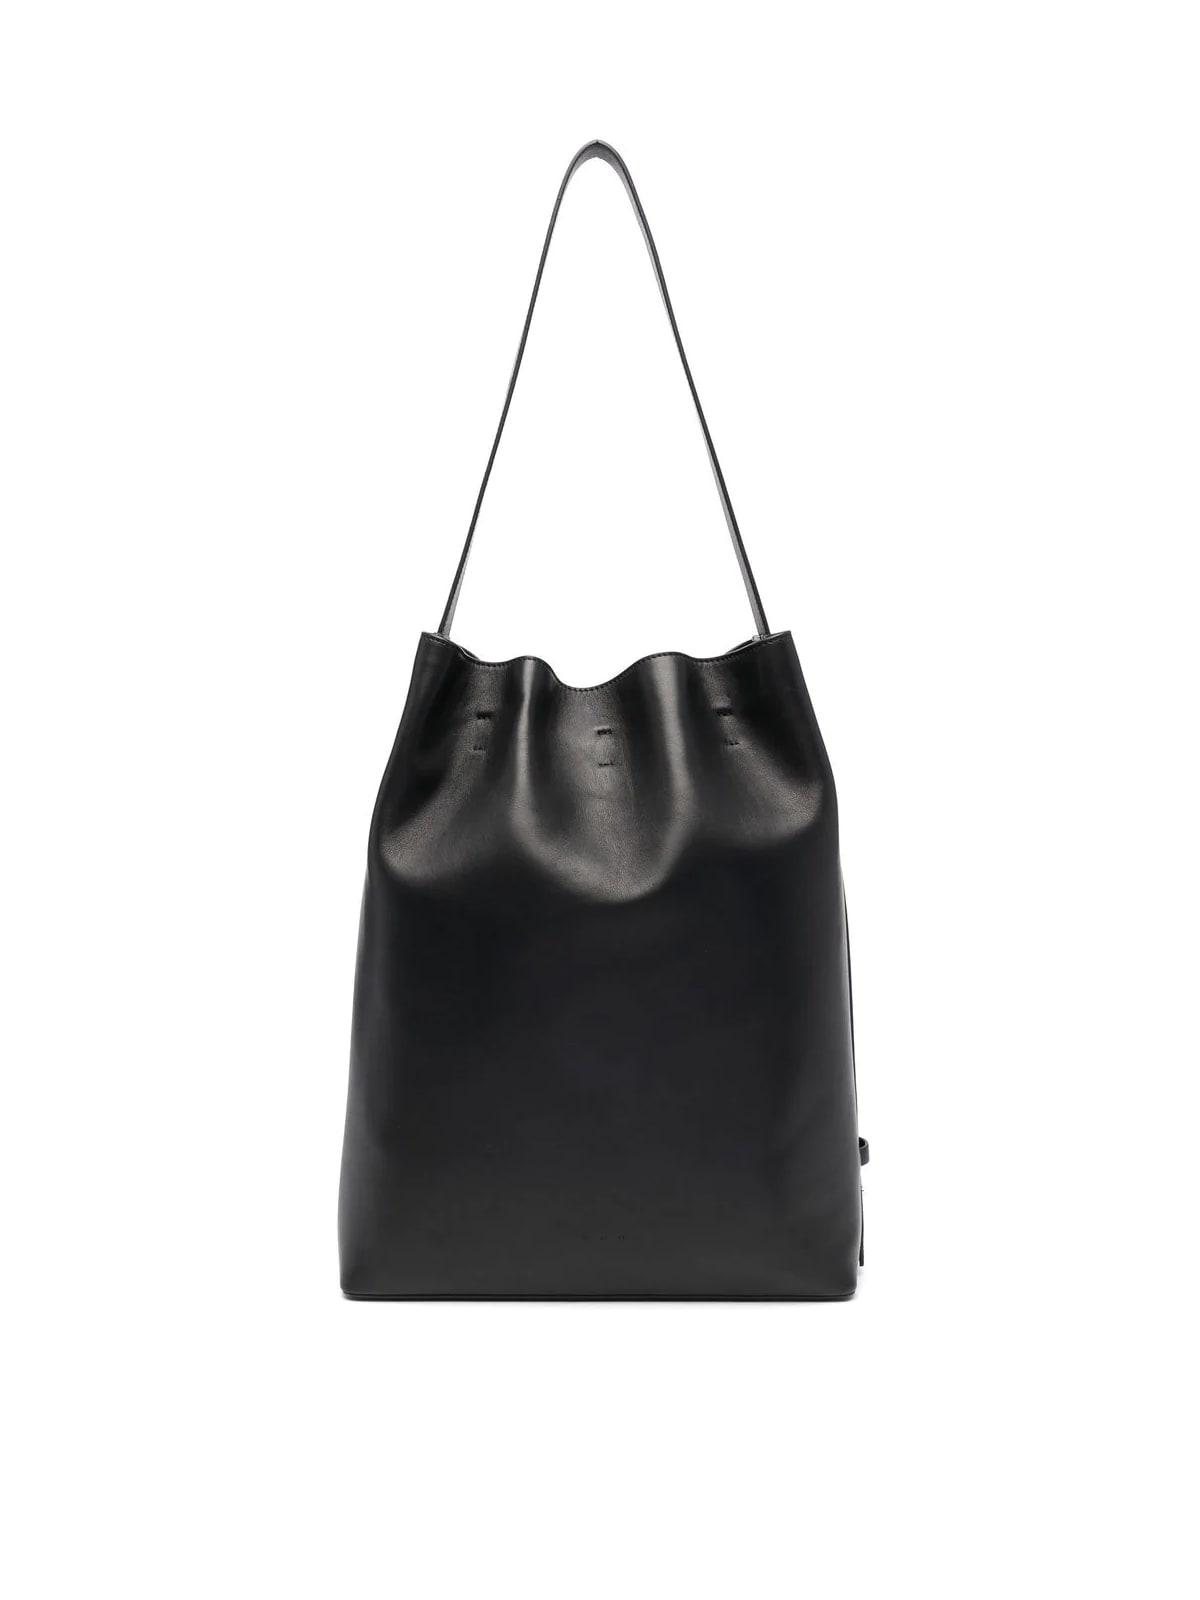 Buy AESTHER EKME Marin Maxi Shoulder Bag - Black At 30% Off